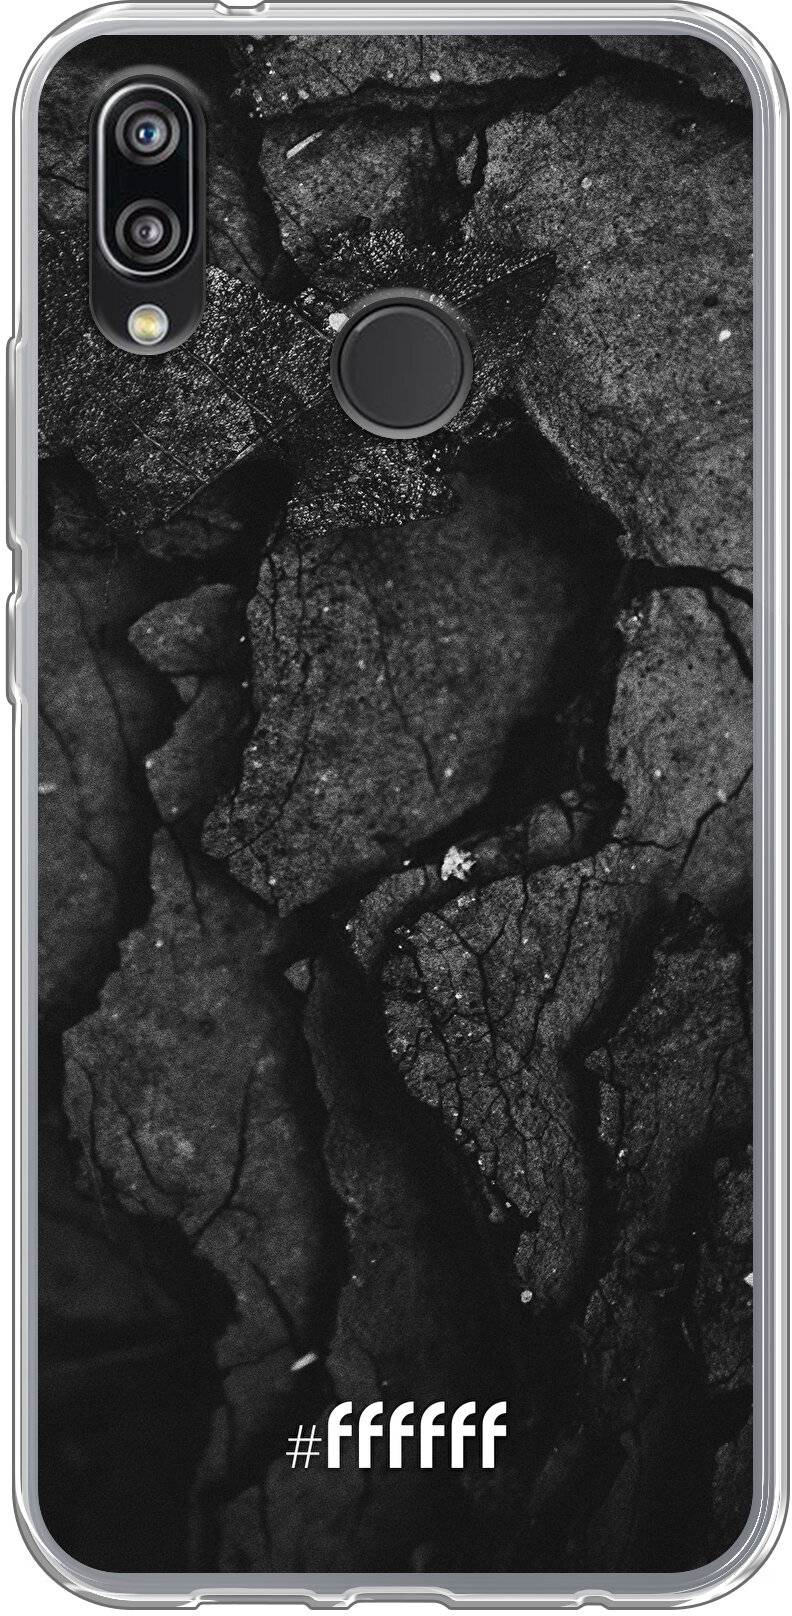 Dark Rock Formation P20 Lite (2018)